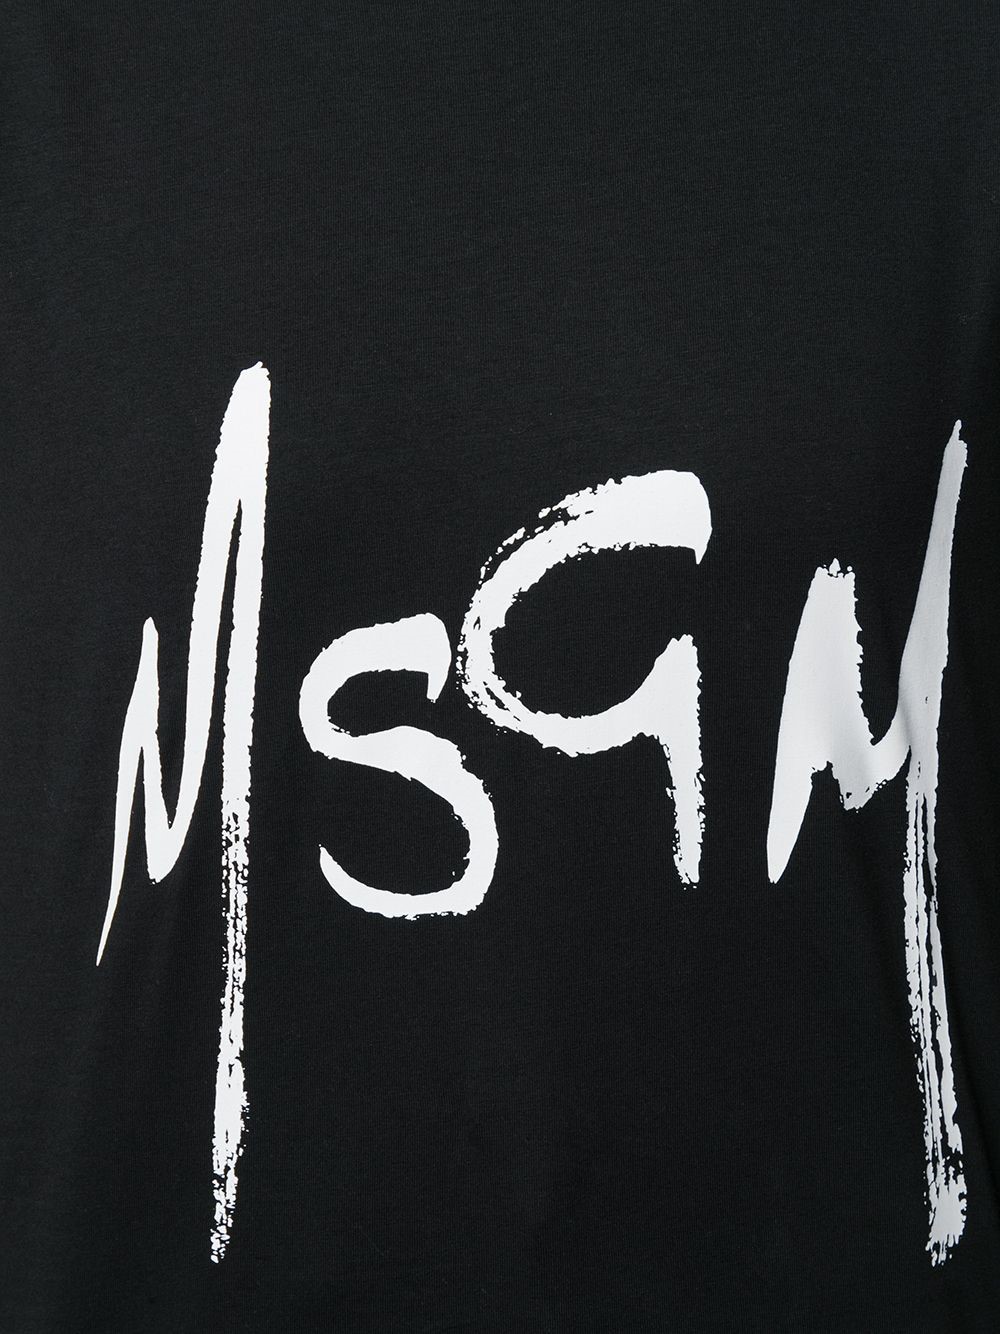 msw logo documentation